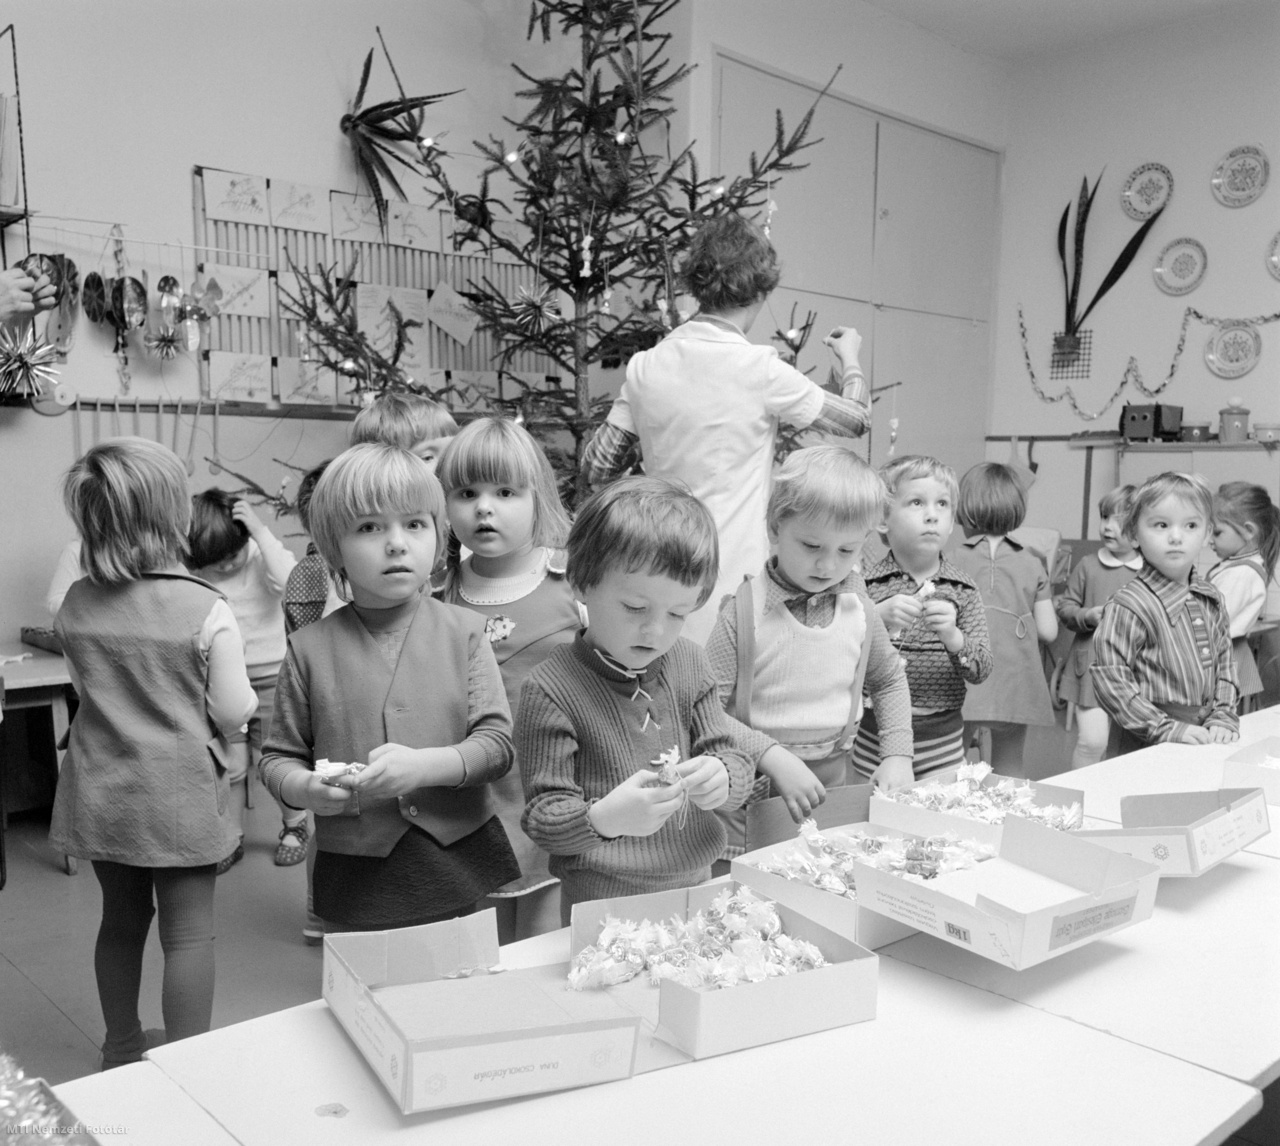 Lenti, 1978. december 22. Karácsonyfát díszítenek a gyerekek az óvónő segítségével a Petőfi Sándor utcai óvodában a városi rangra emelkedő Lentiben.